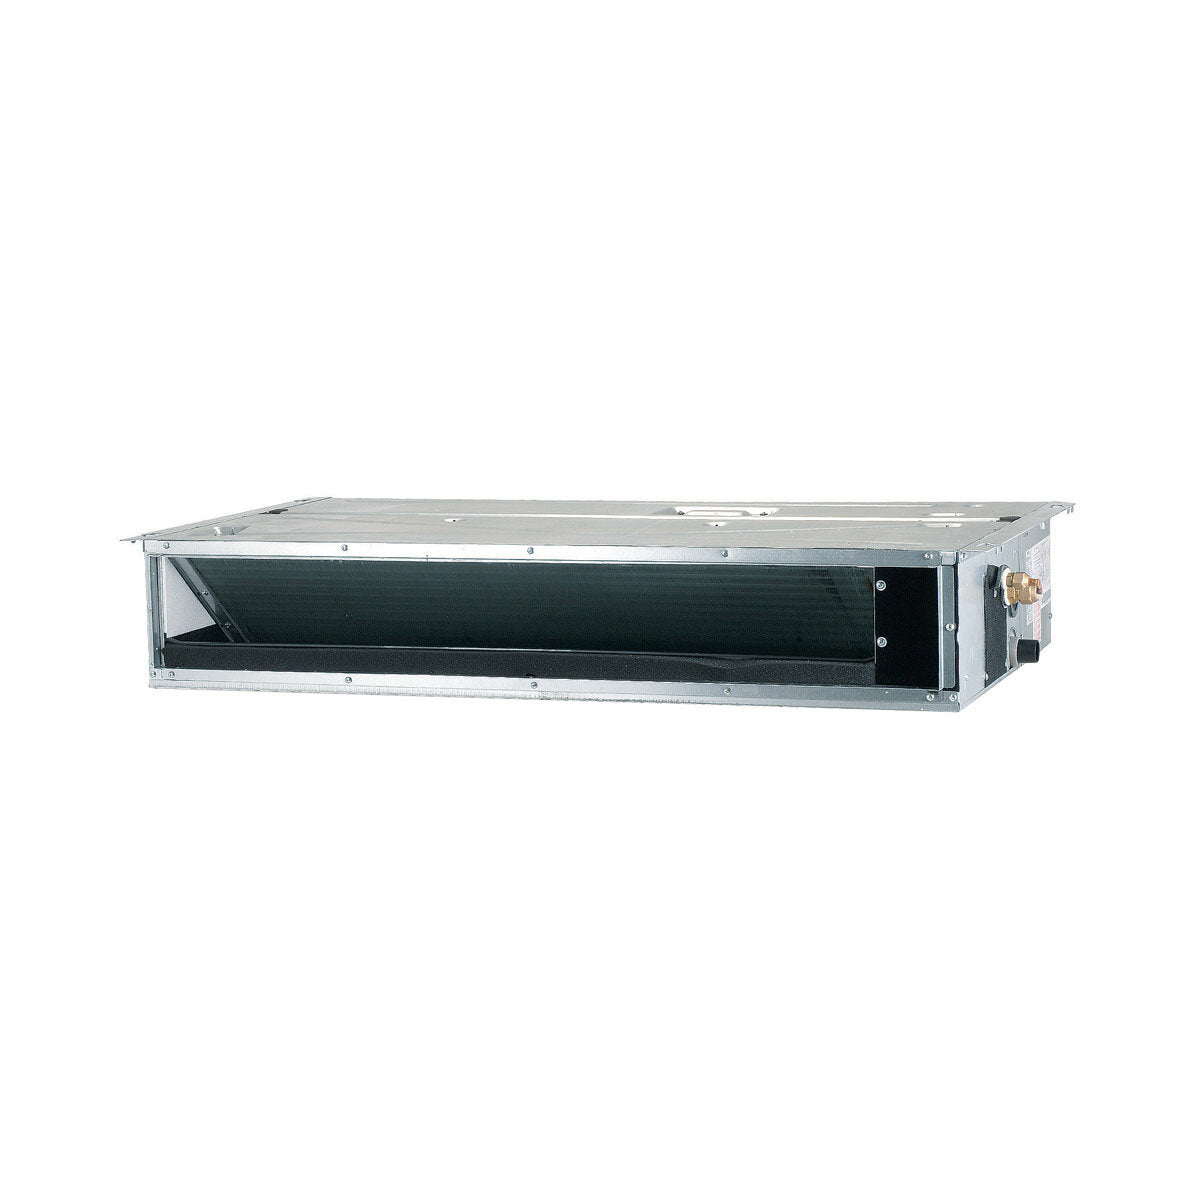 Dual split ductable Samsung air conditioner 9000 + 12000 BTU inverter A +++ external unit 5 kW